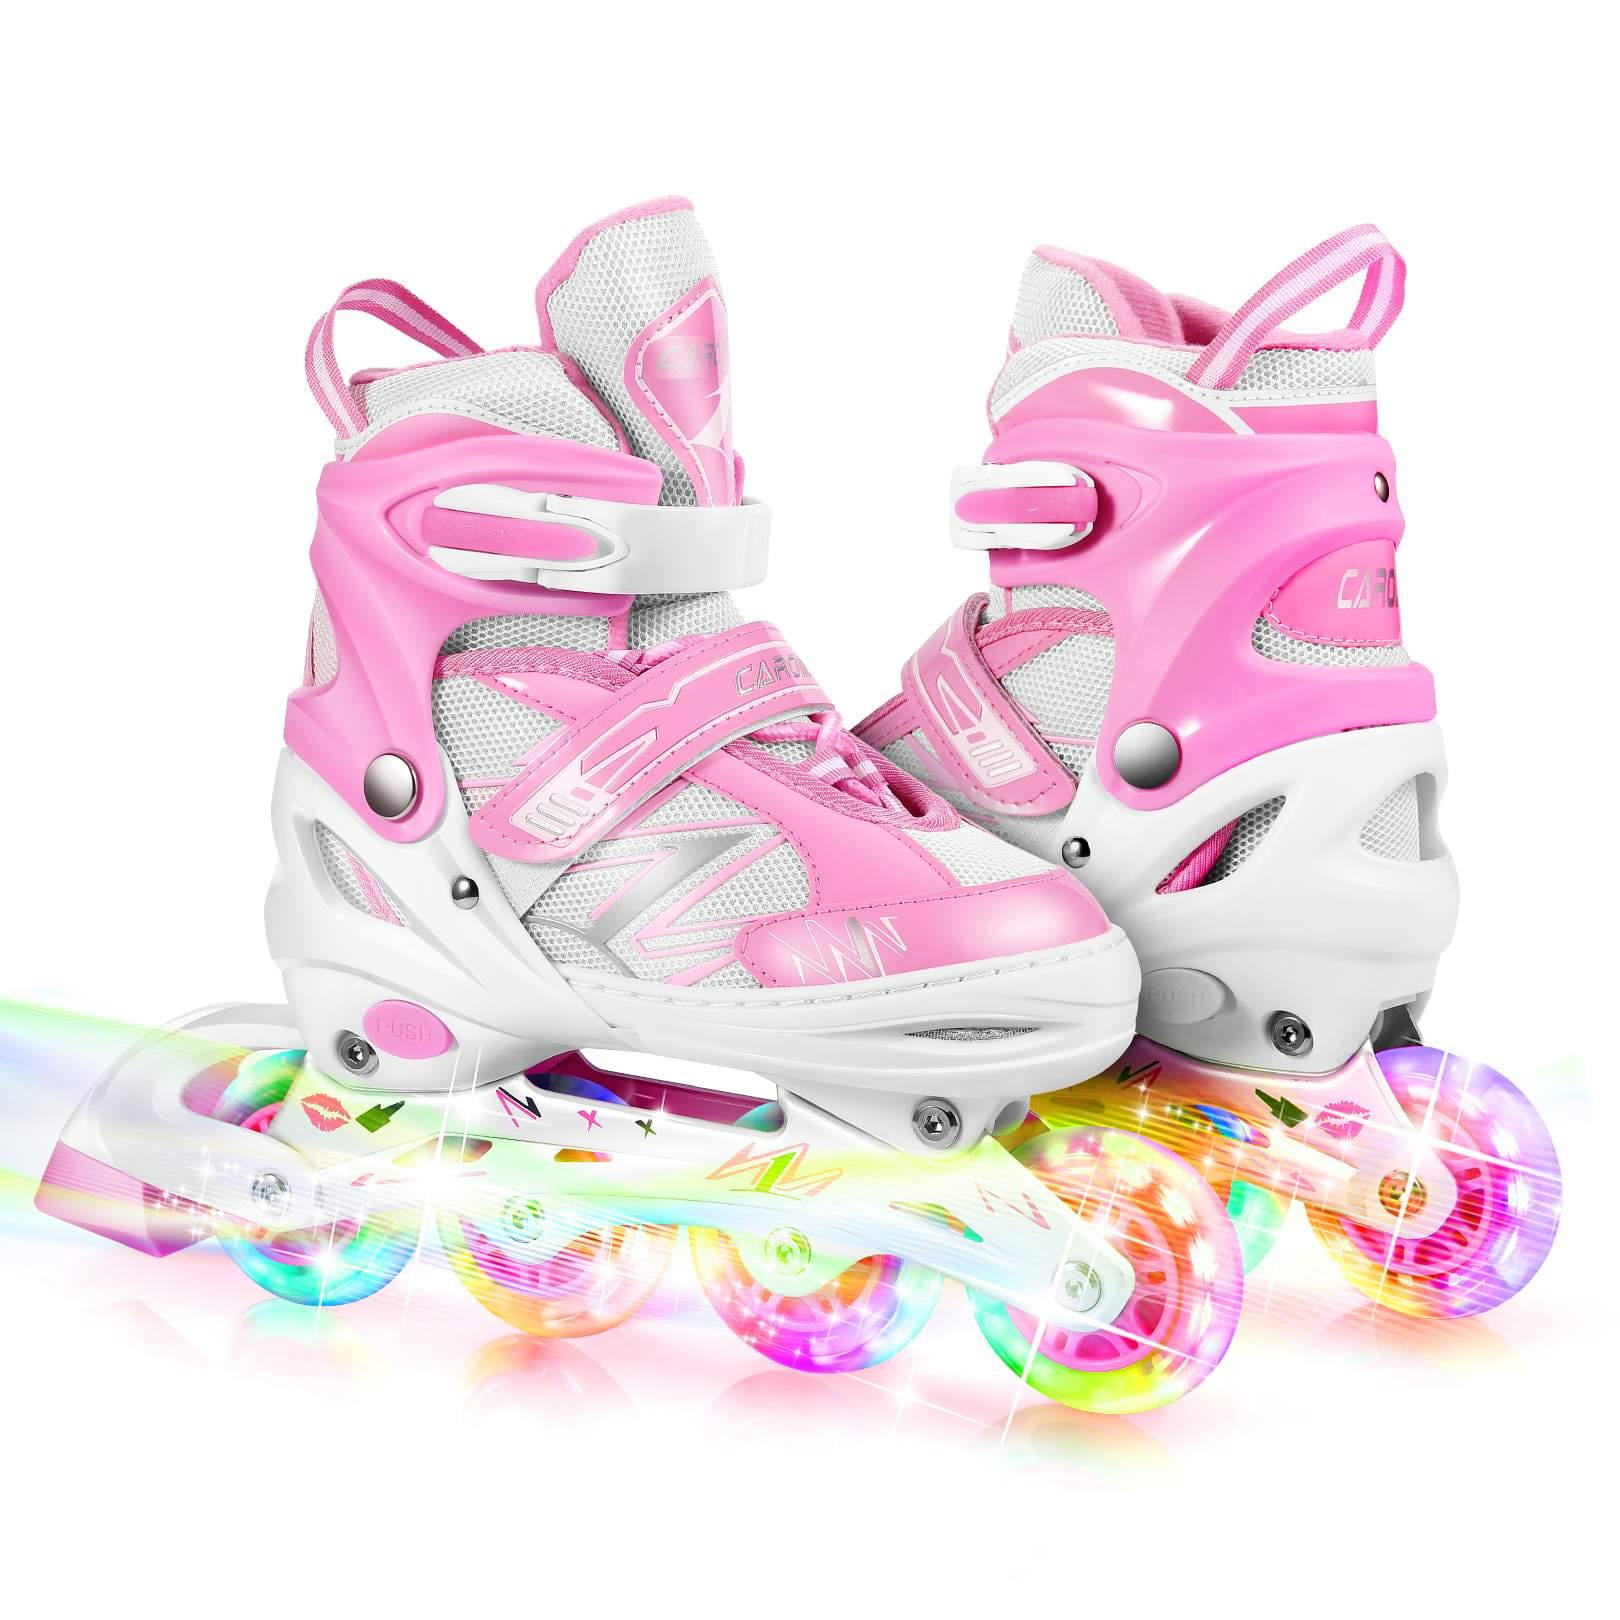 CAROMA Kids Inline Roller Skates with Light Roller Blades 3 Adjustable Size_Gift 